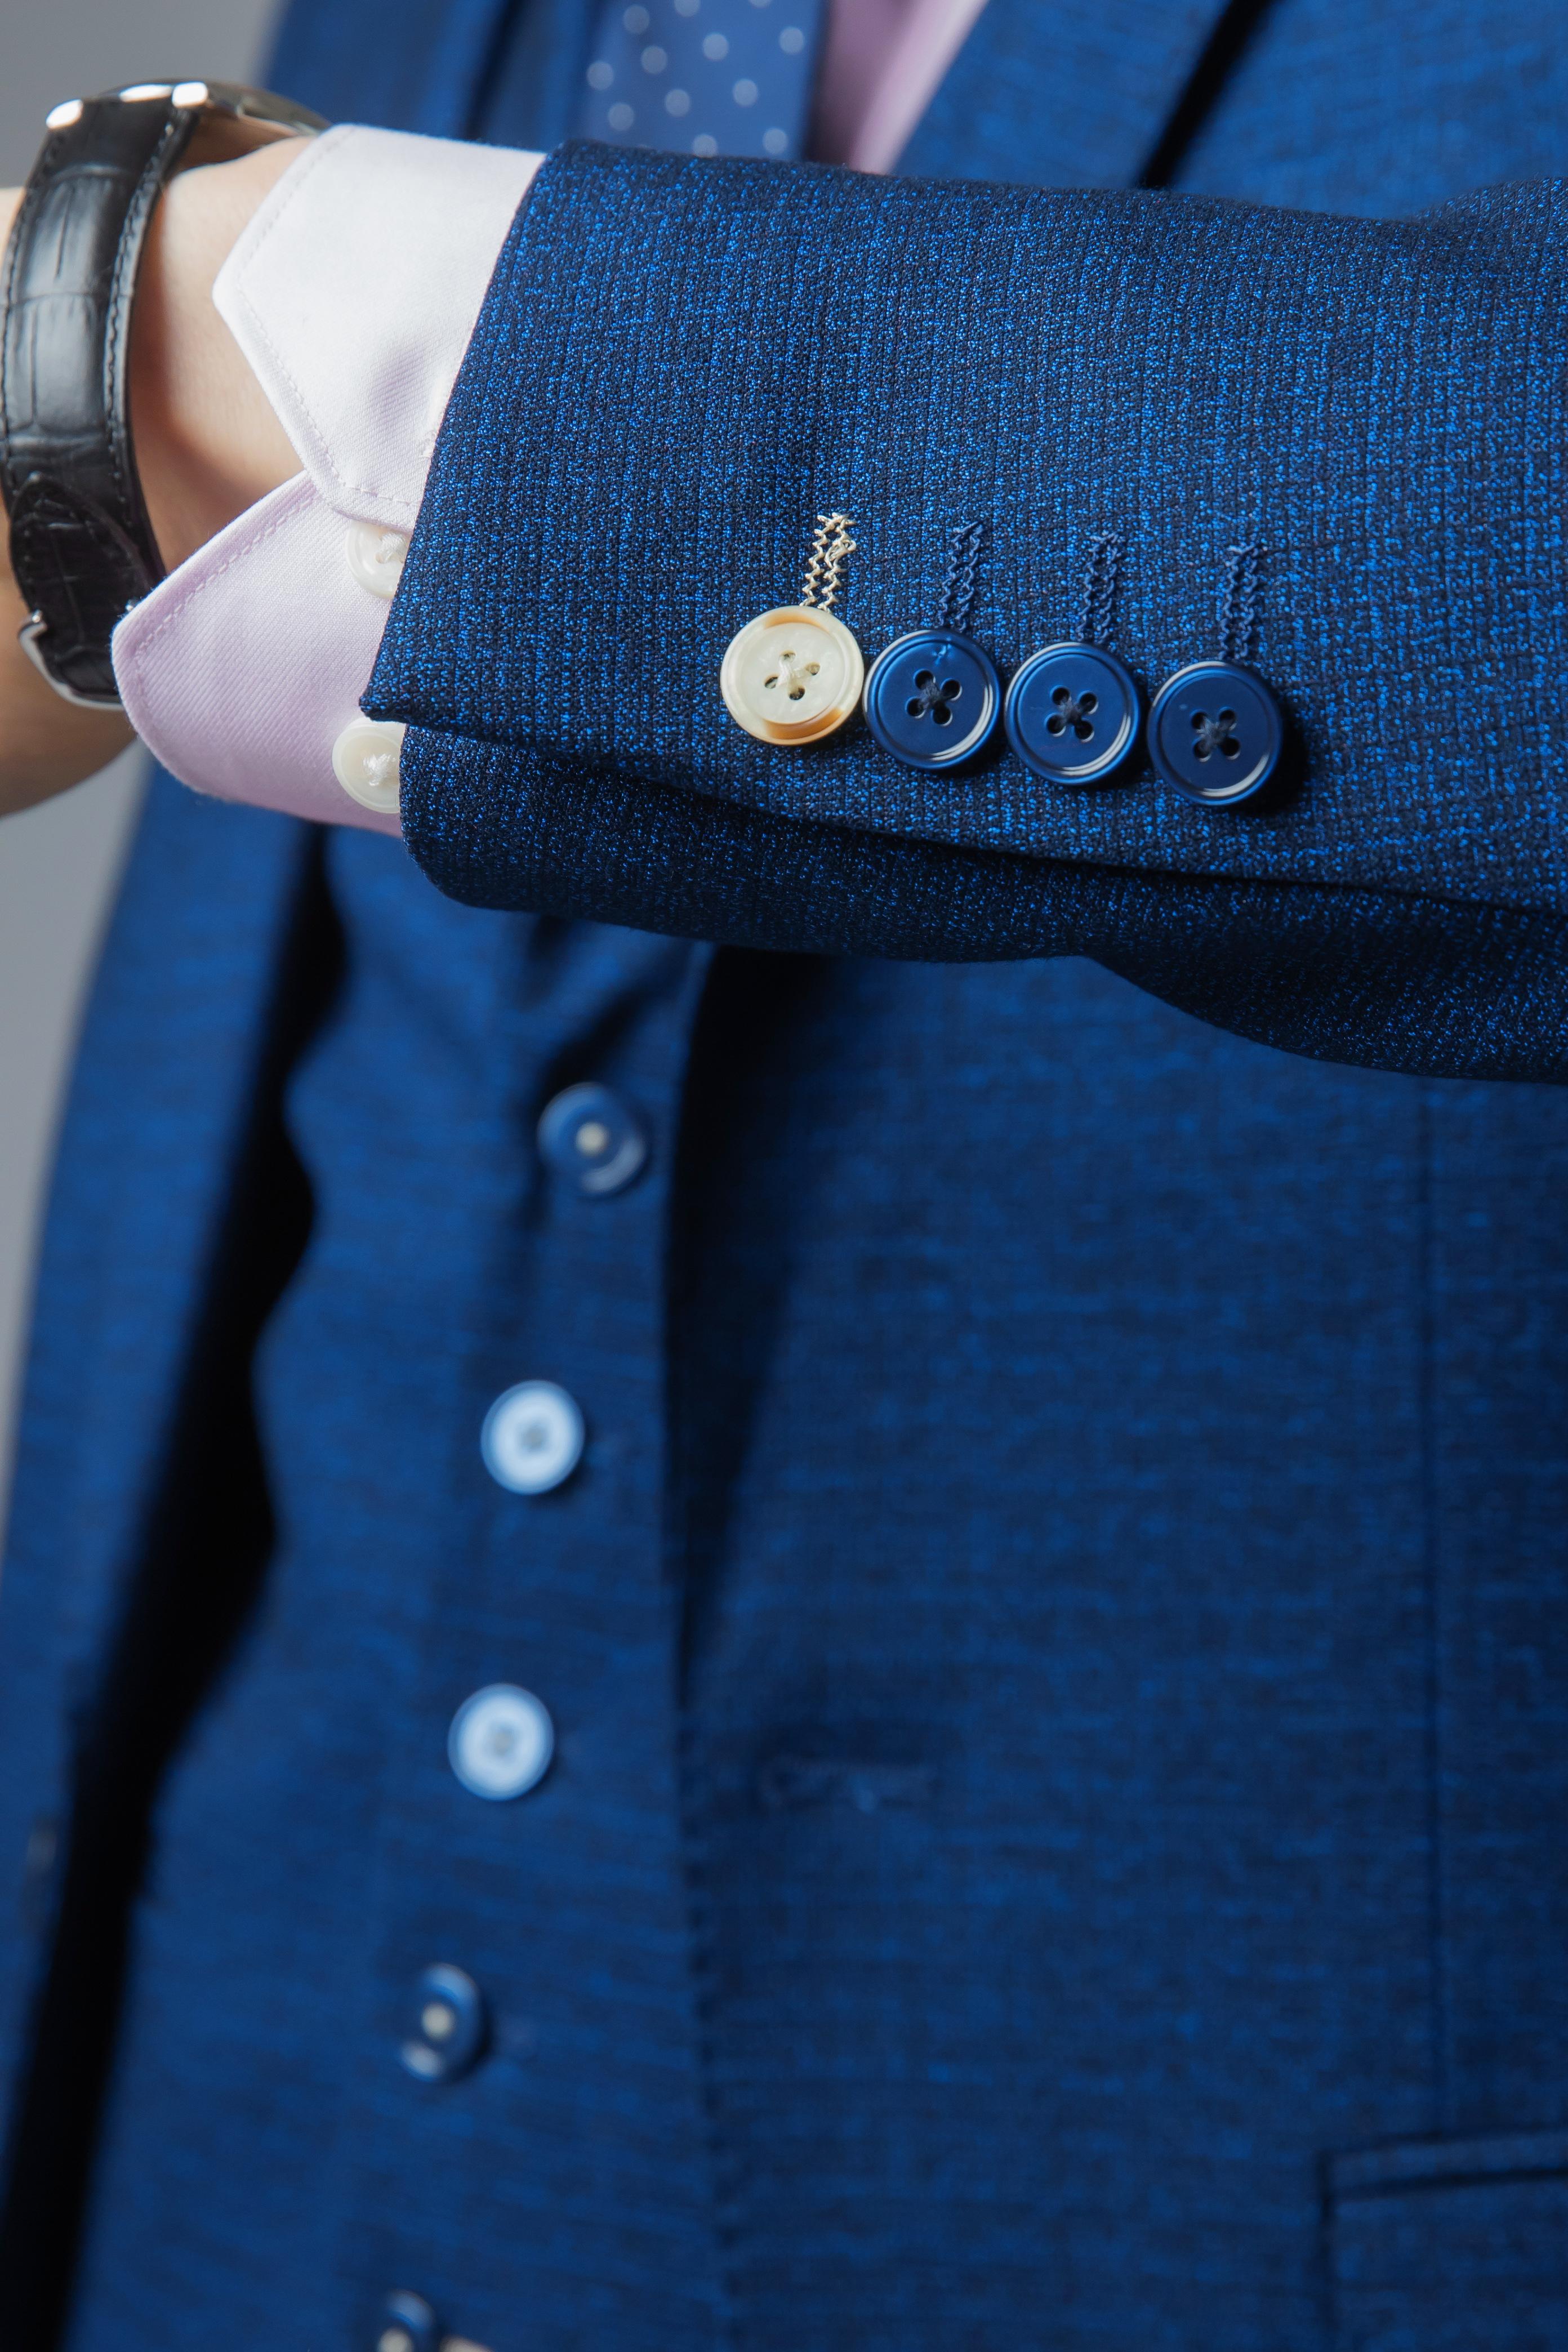 Men's Slim Fit Blue Suit Jacket - MATEO - Indigo Blue